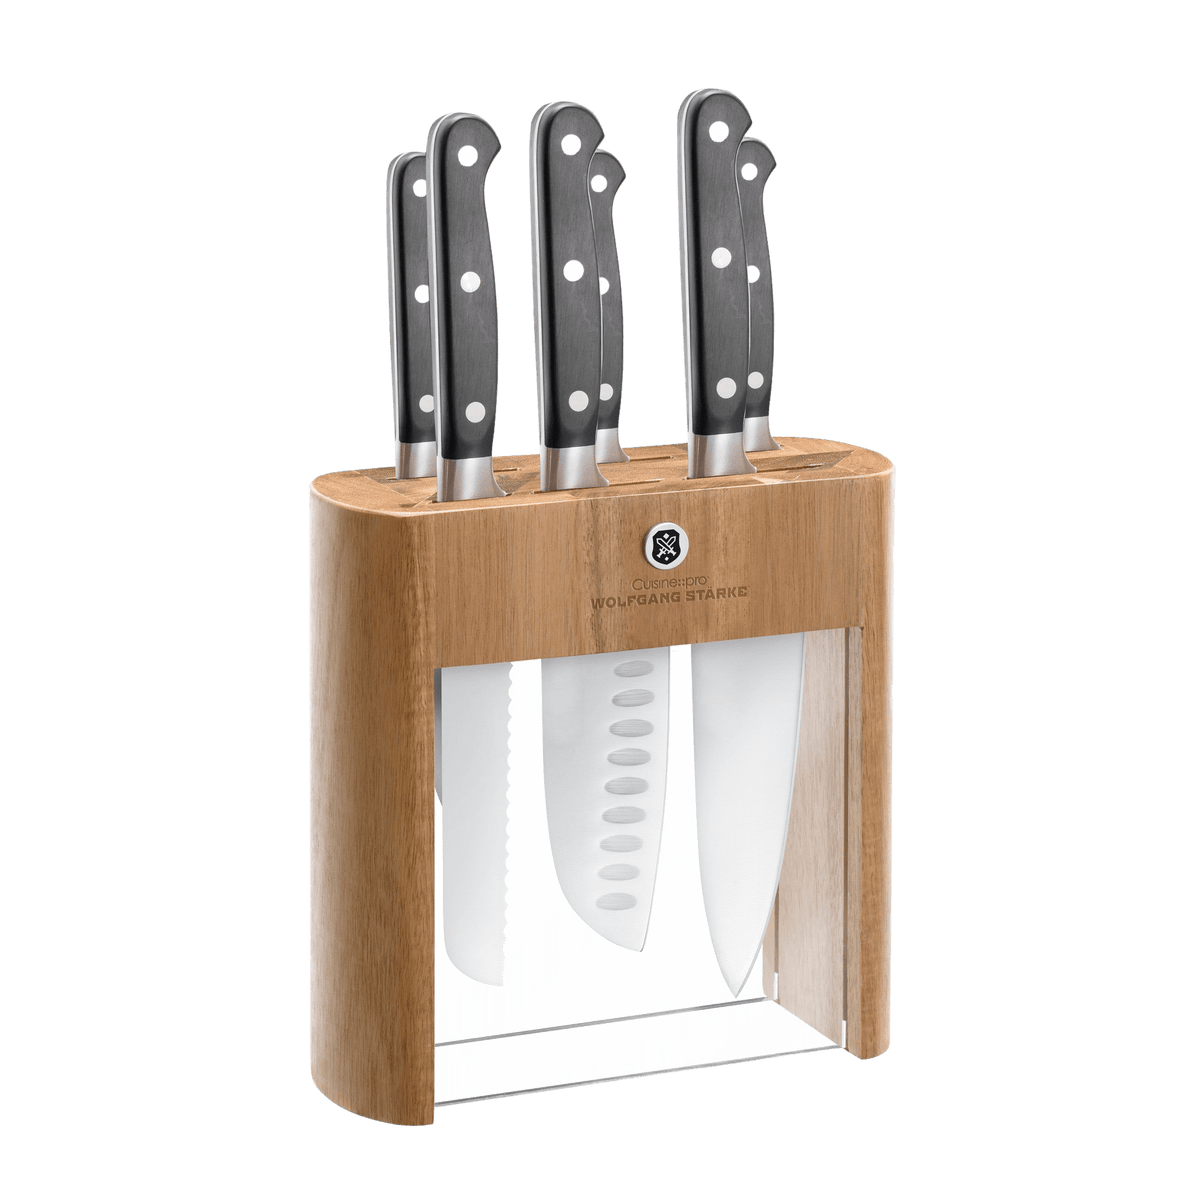 DISHWASHER SAFE MC701 Black Knife Sets of 26, Stainless Steel Kitchen  Knives Blo